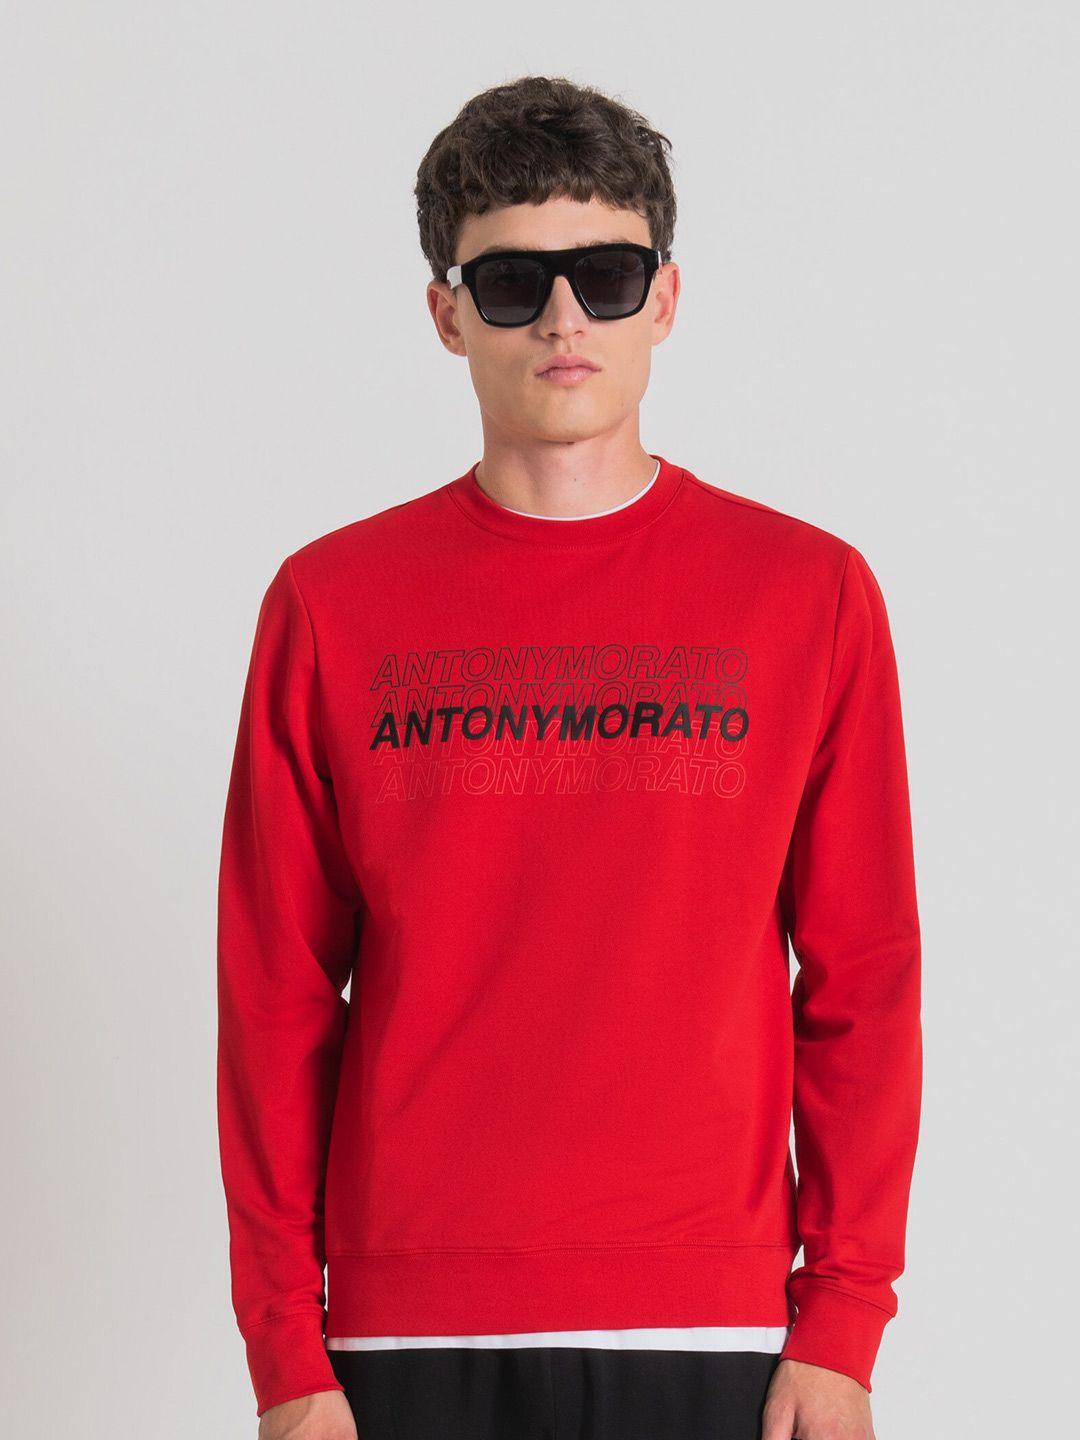 antony morato typography printed round neck pullover sweatshirt